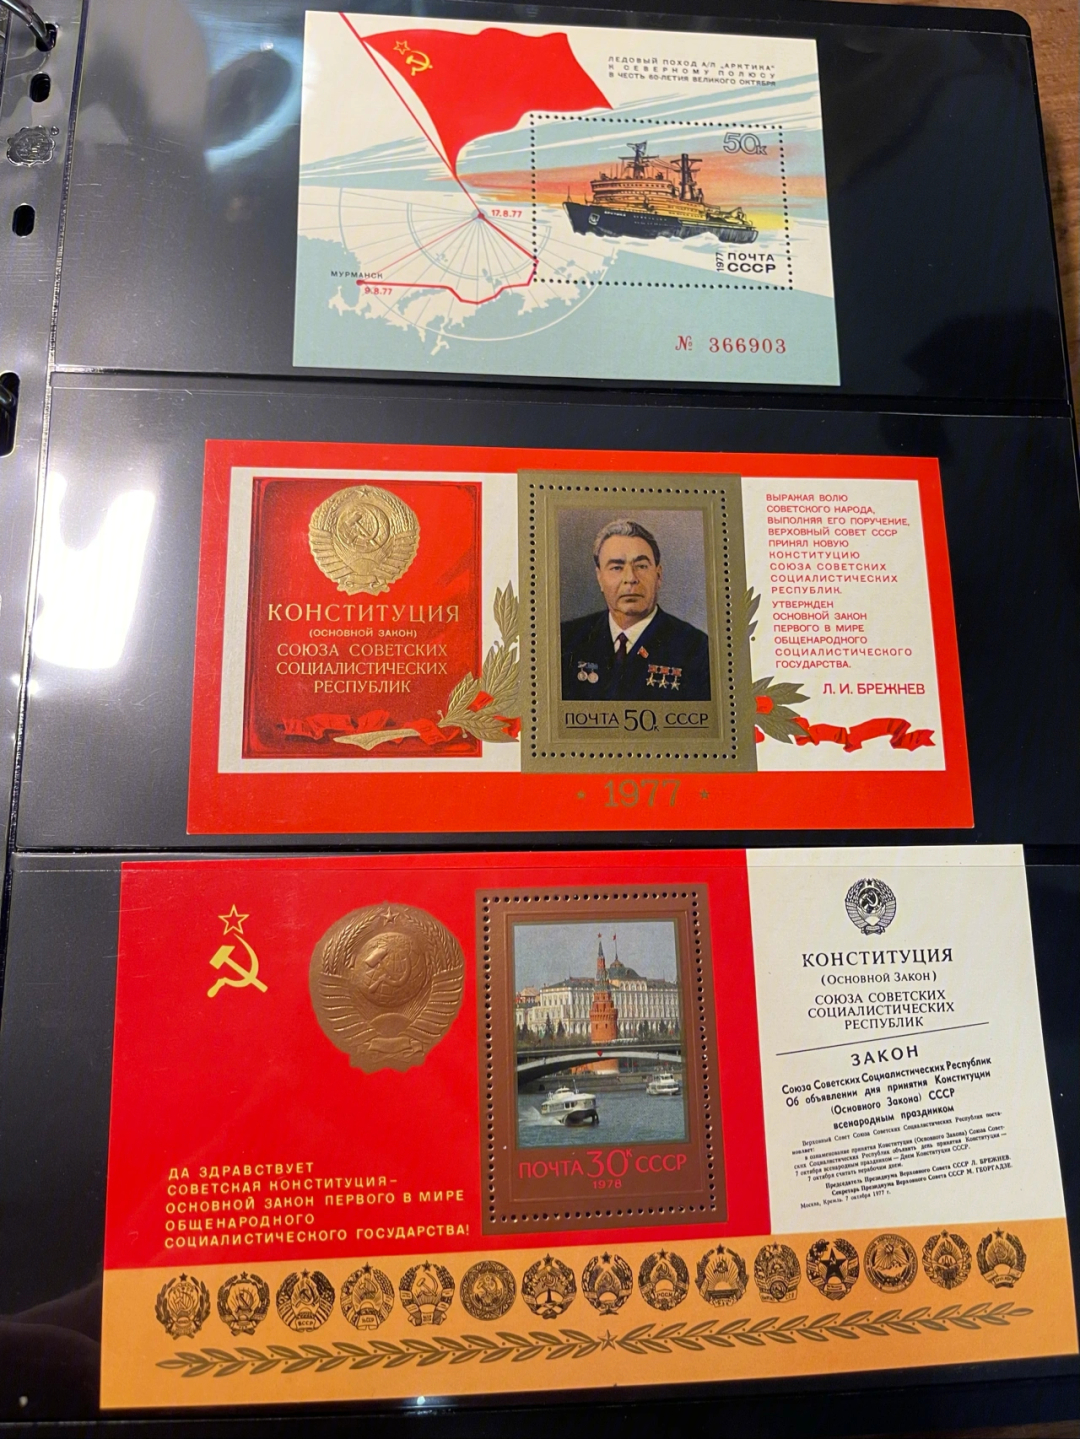 苏联最贵的单张邮票图片